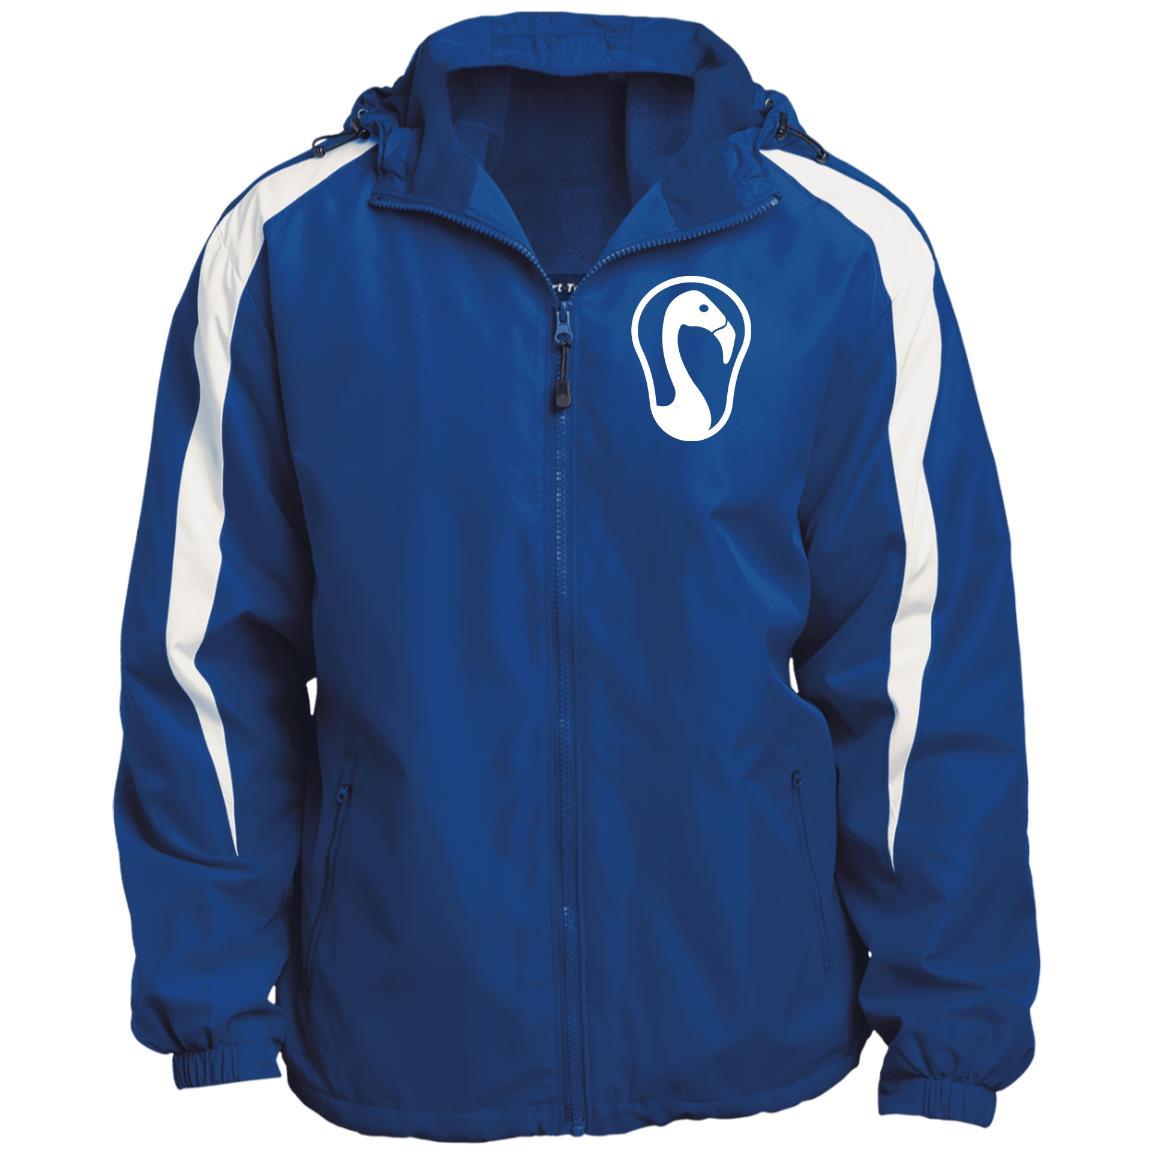 Signature Lacrosse Fleece Lined Hooded Premium Jacket Signature Lacrosse